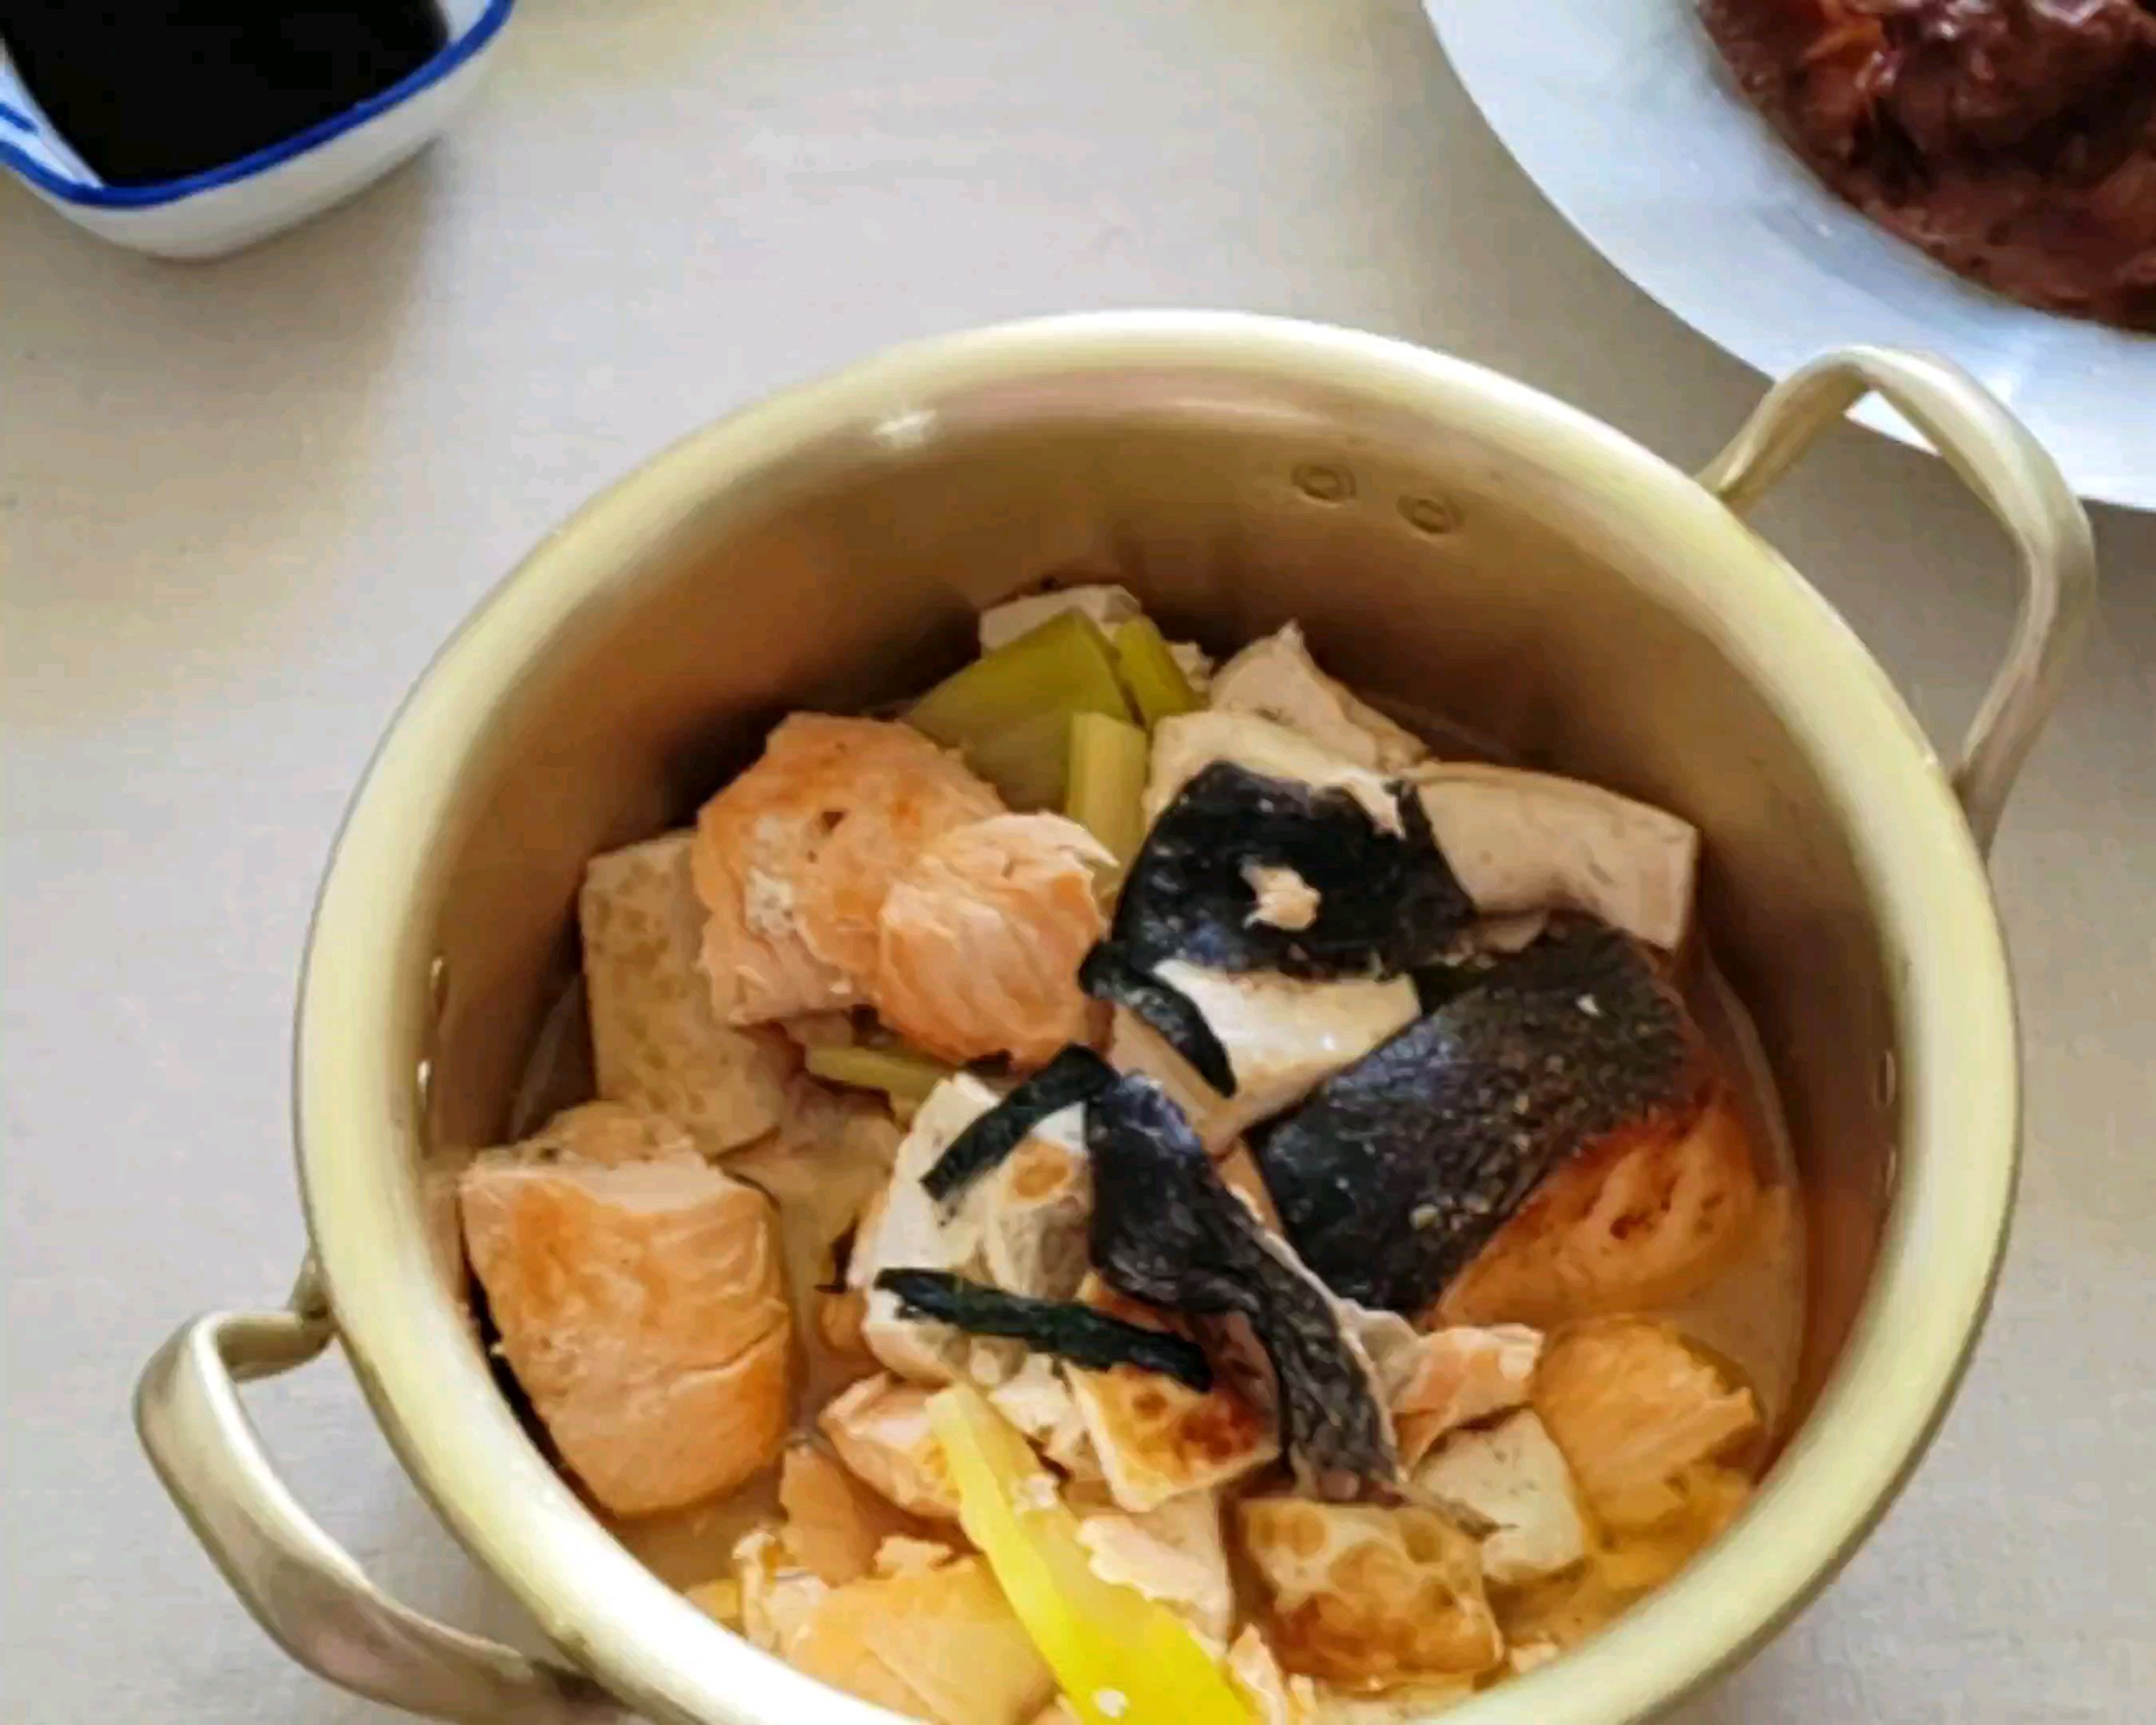 三文鱼炖豆腐